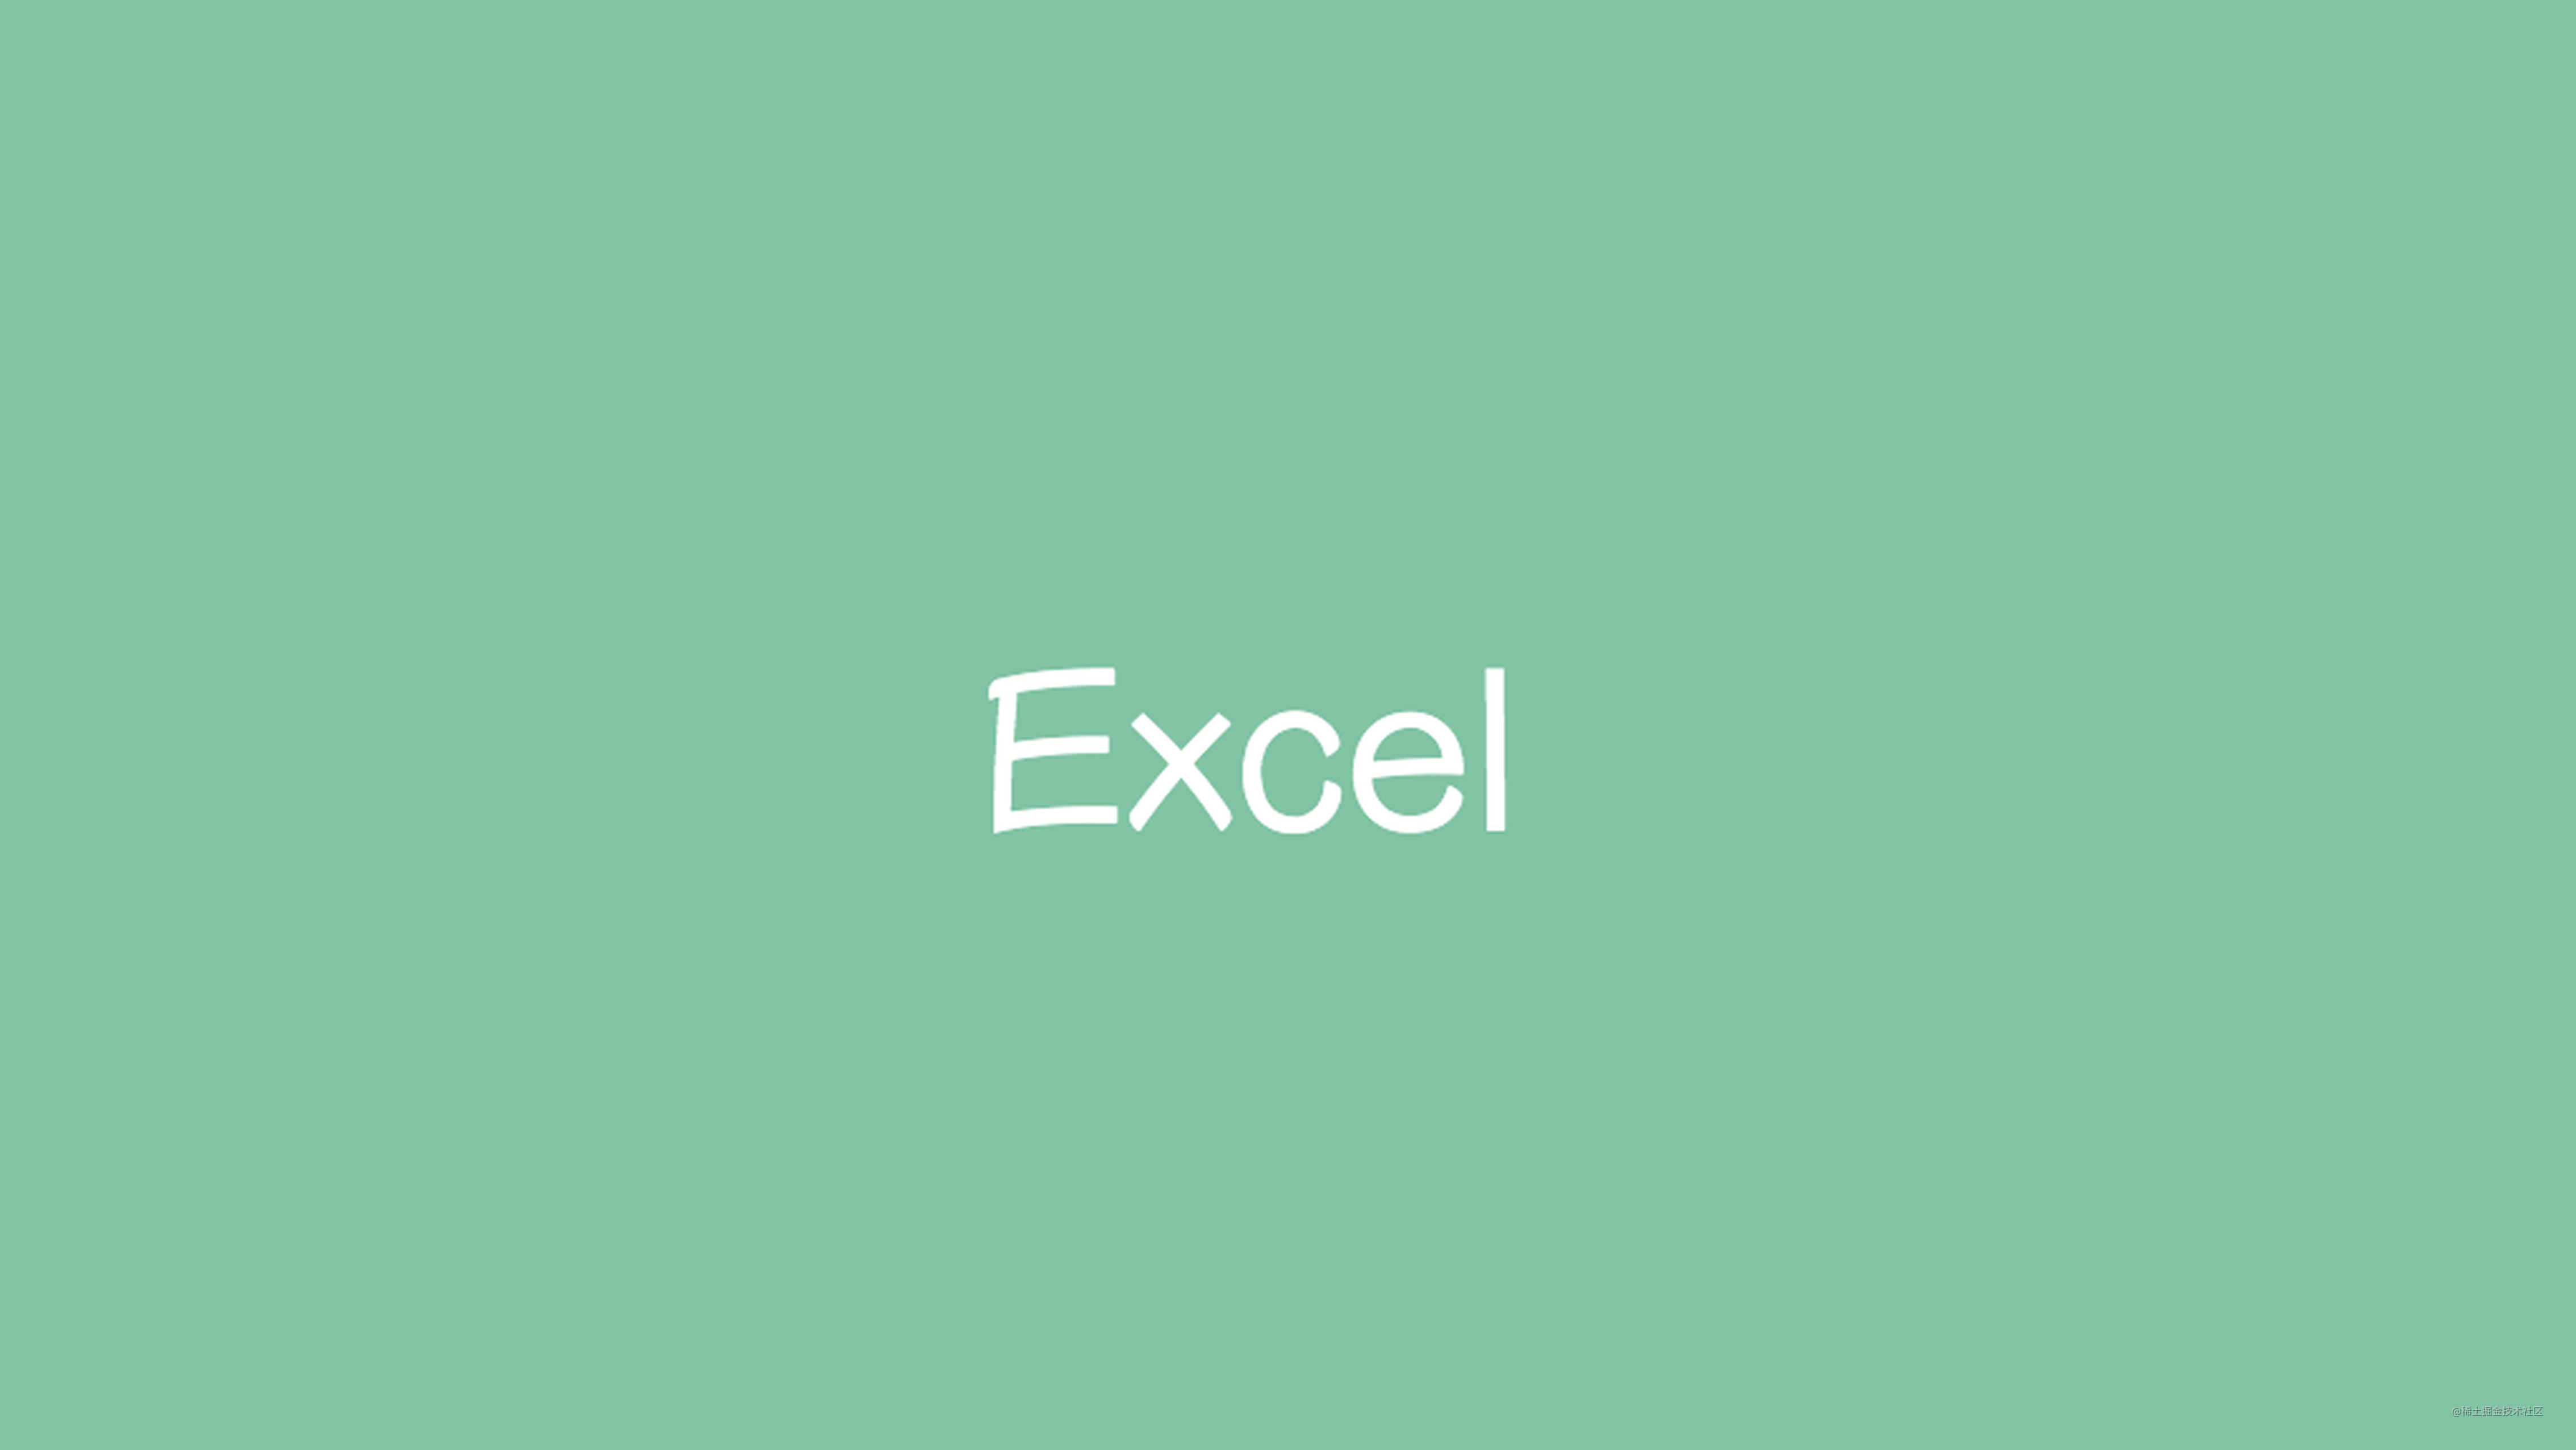 惊了！7 行代码优雅地实现 Excel 文件生成&下载功能